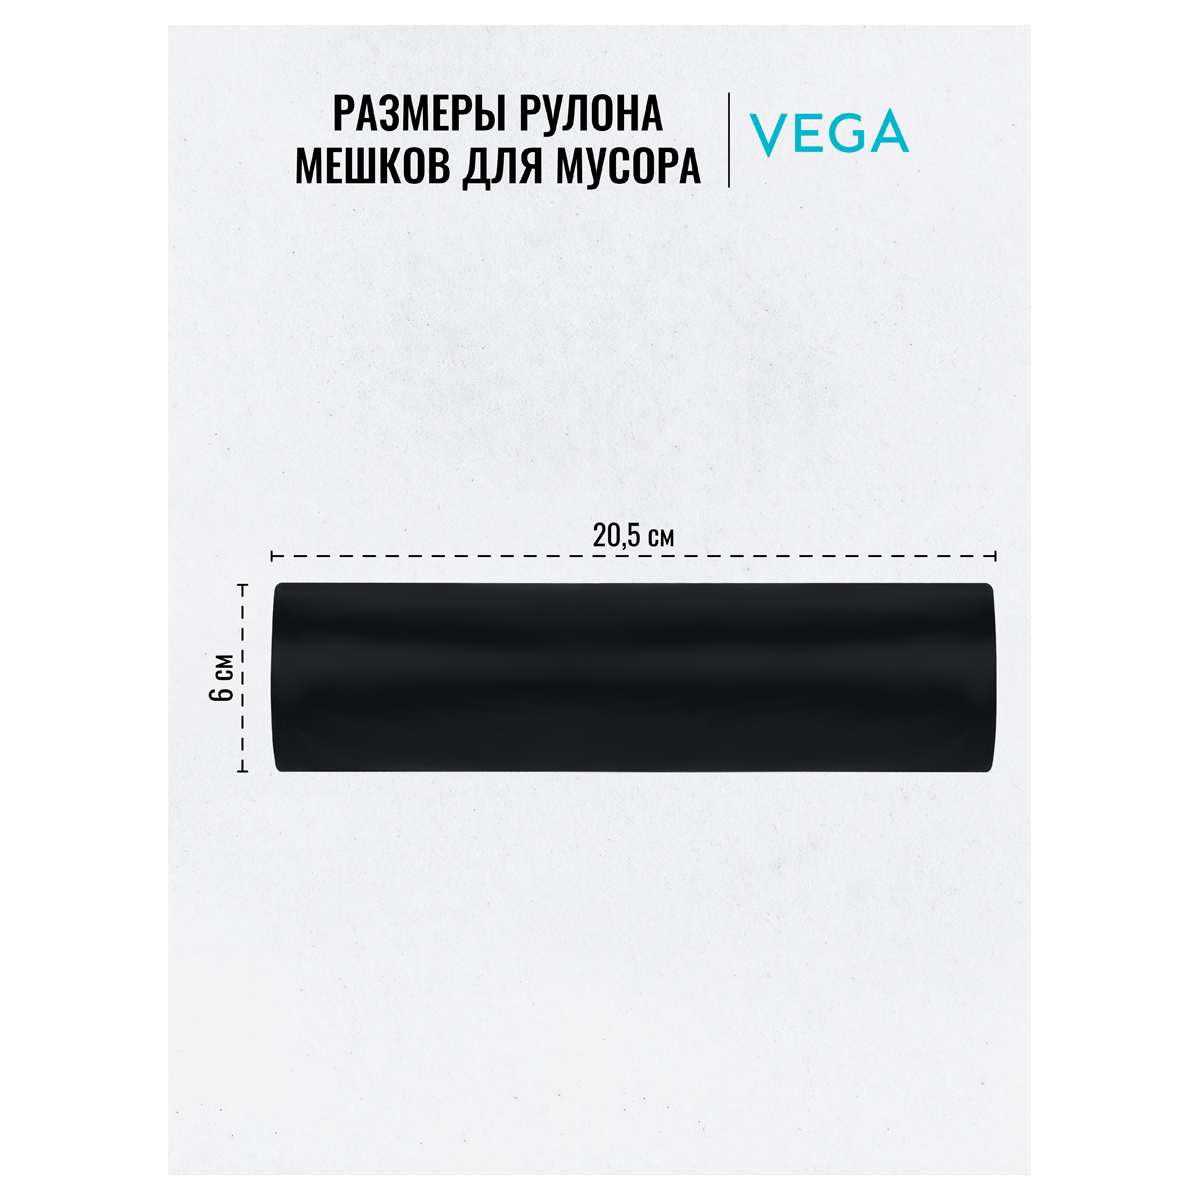 Мешки для мусора 160л Vega ПВД, 80*106см, 20мкм, 10шт., черные, в рулоне